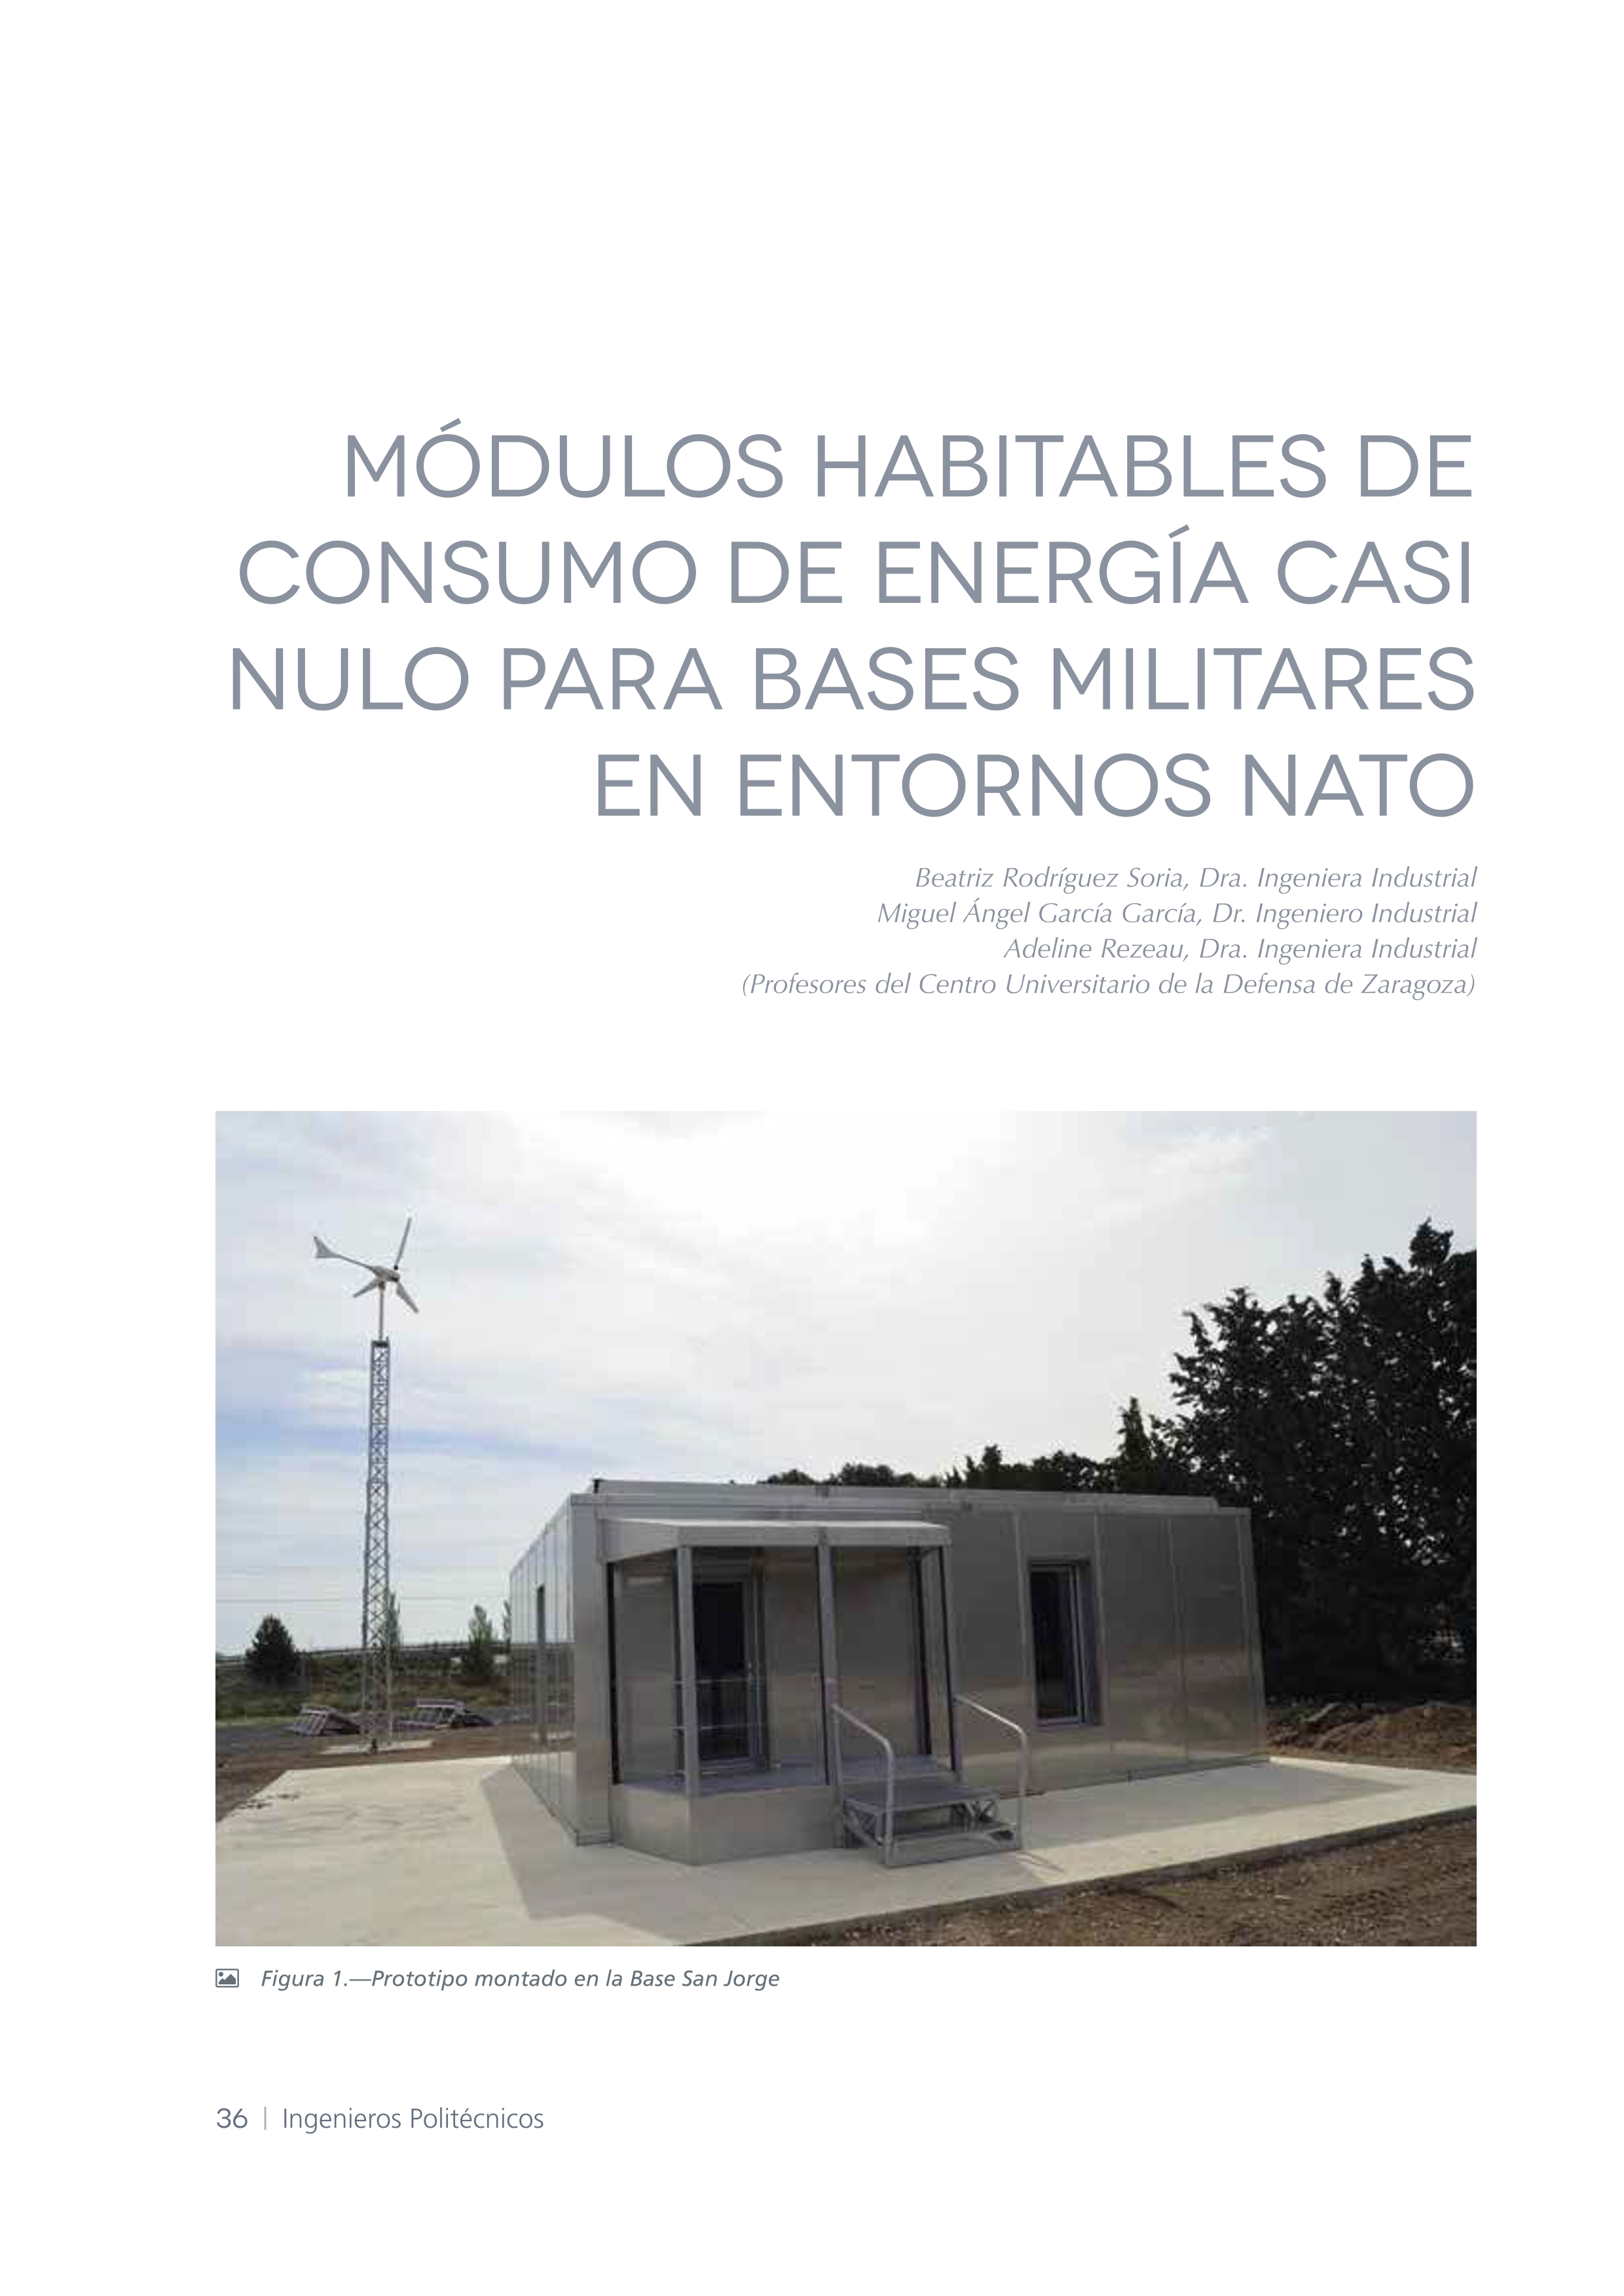 Módulos habitables de consumo de energía casi nulo para bases militares en entorno NATO